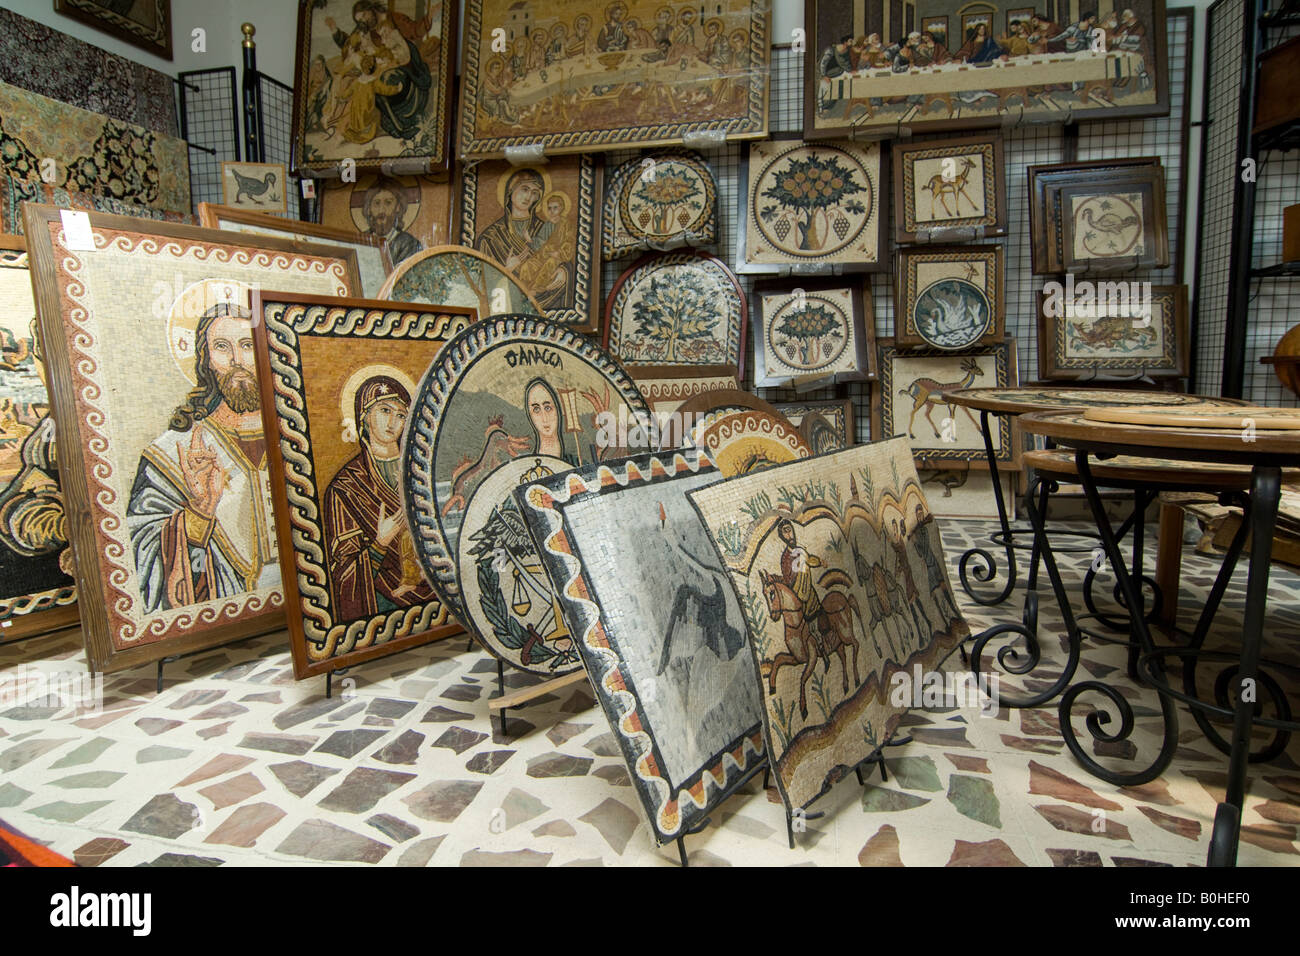 Pinturas de mosaico en una tienda de souvenirs, Jordania, Oriente Medio Foto de stock